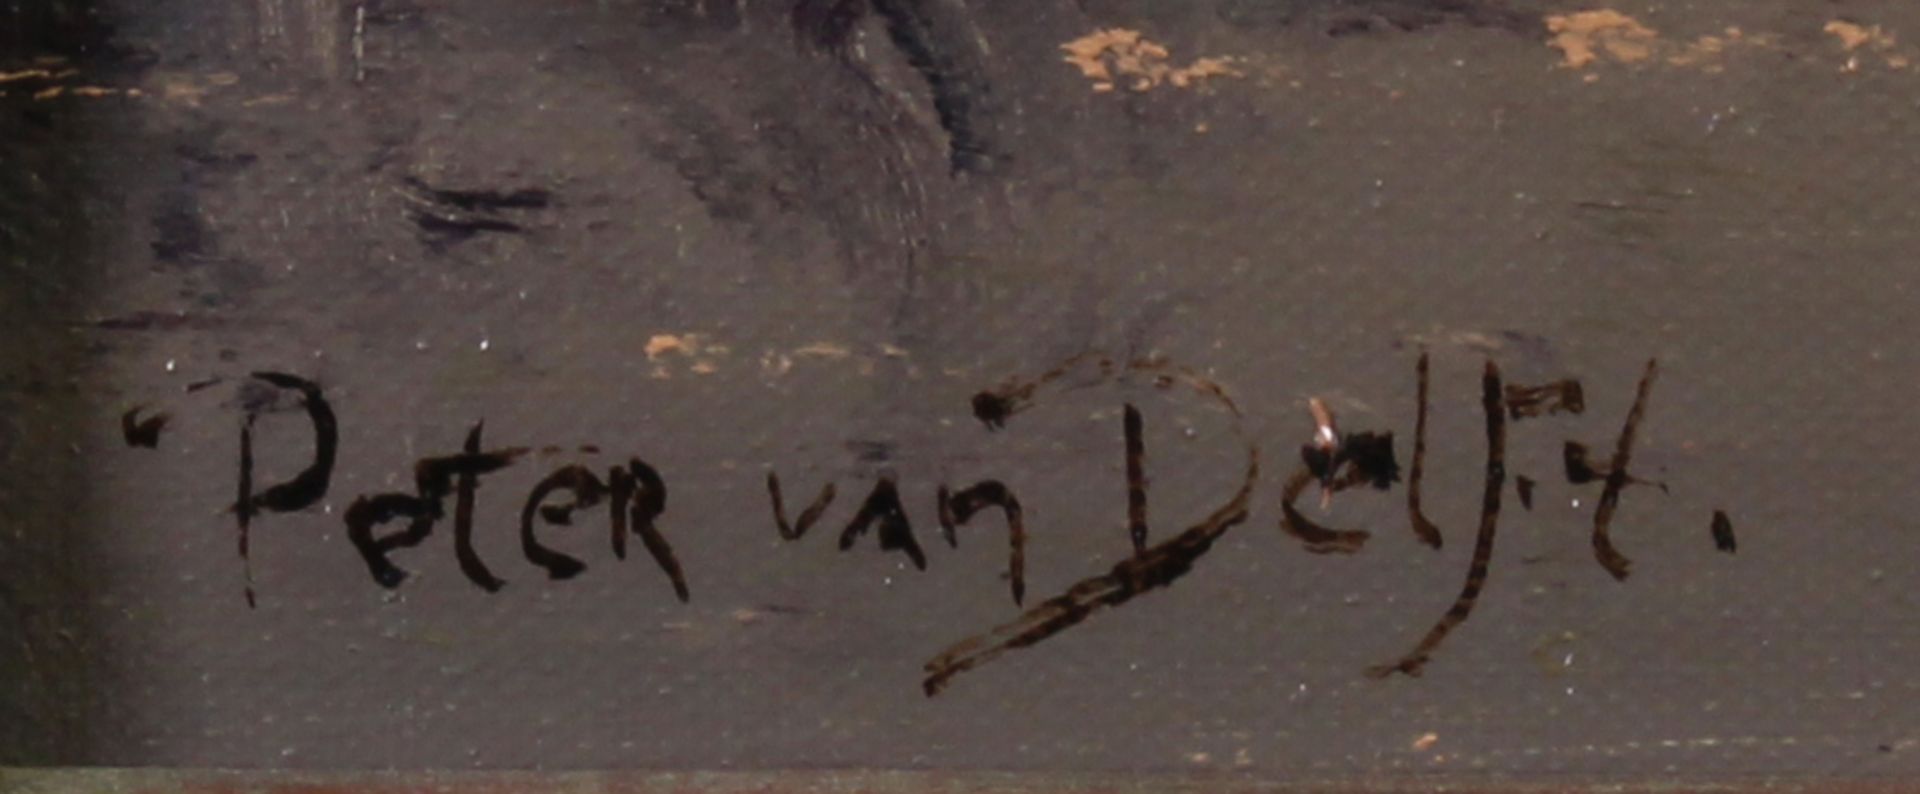 Delft, Peter van (20. Jh.), - Image 3 of 4